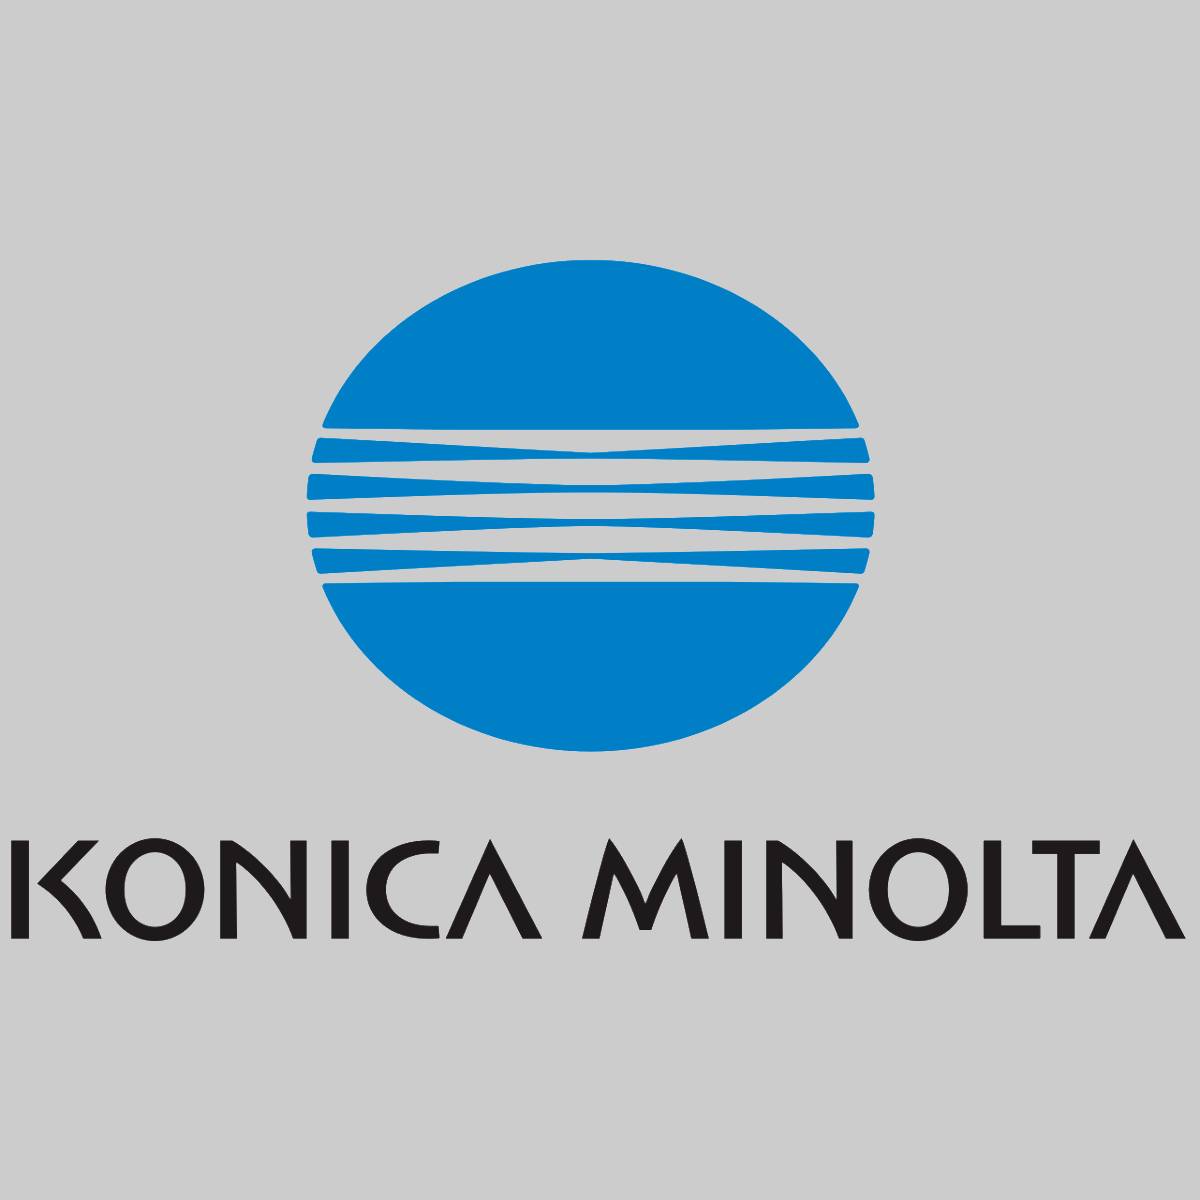 "Original Konica Minolta Yellow Toner A06V253 Magicolor 5500 5600 NEU OVP